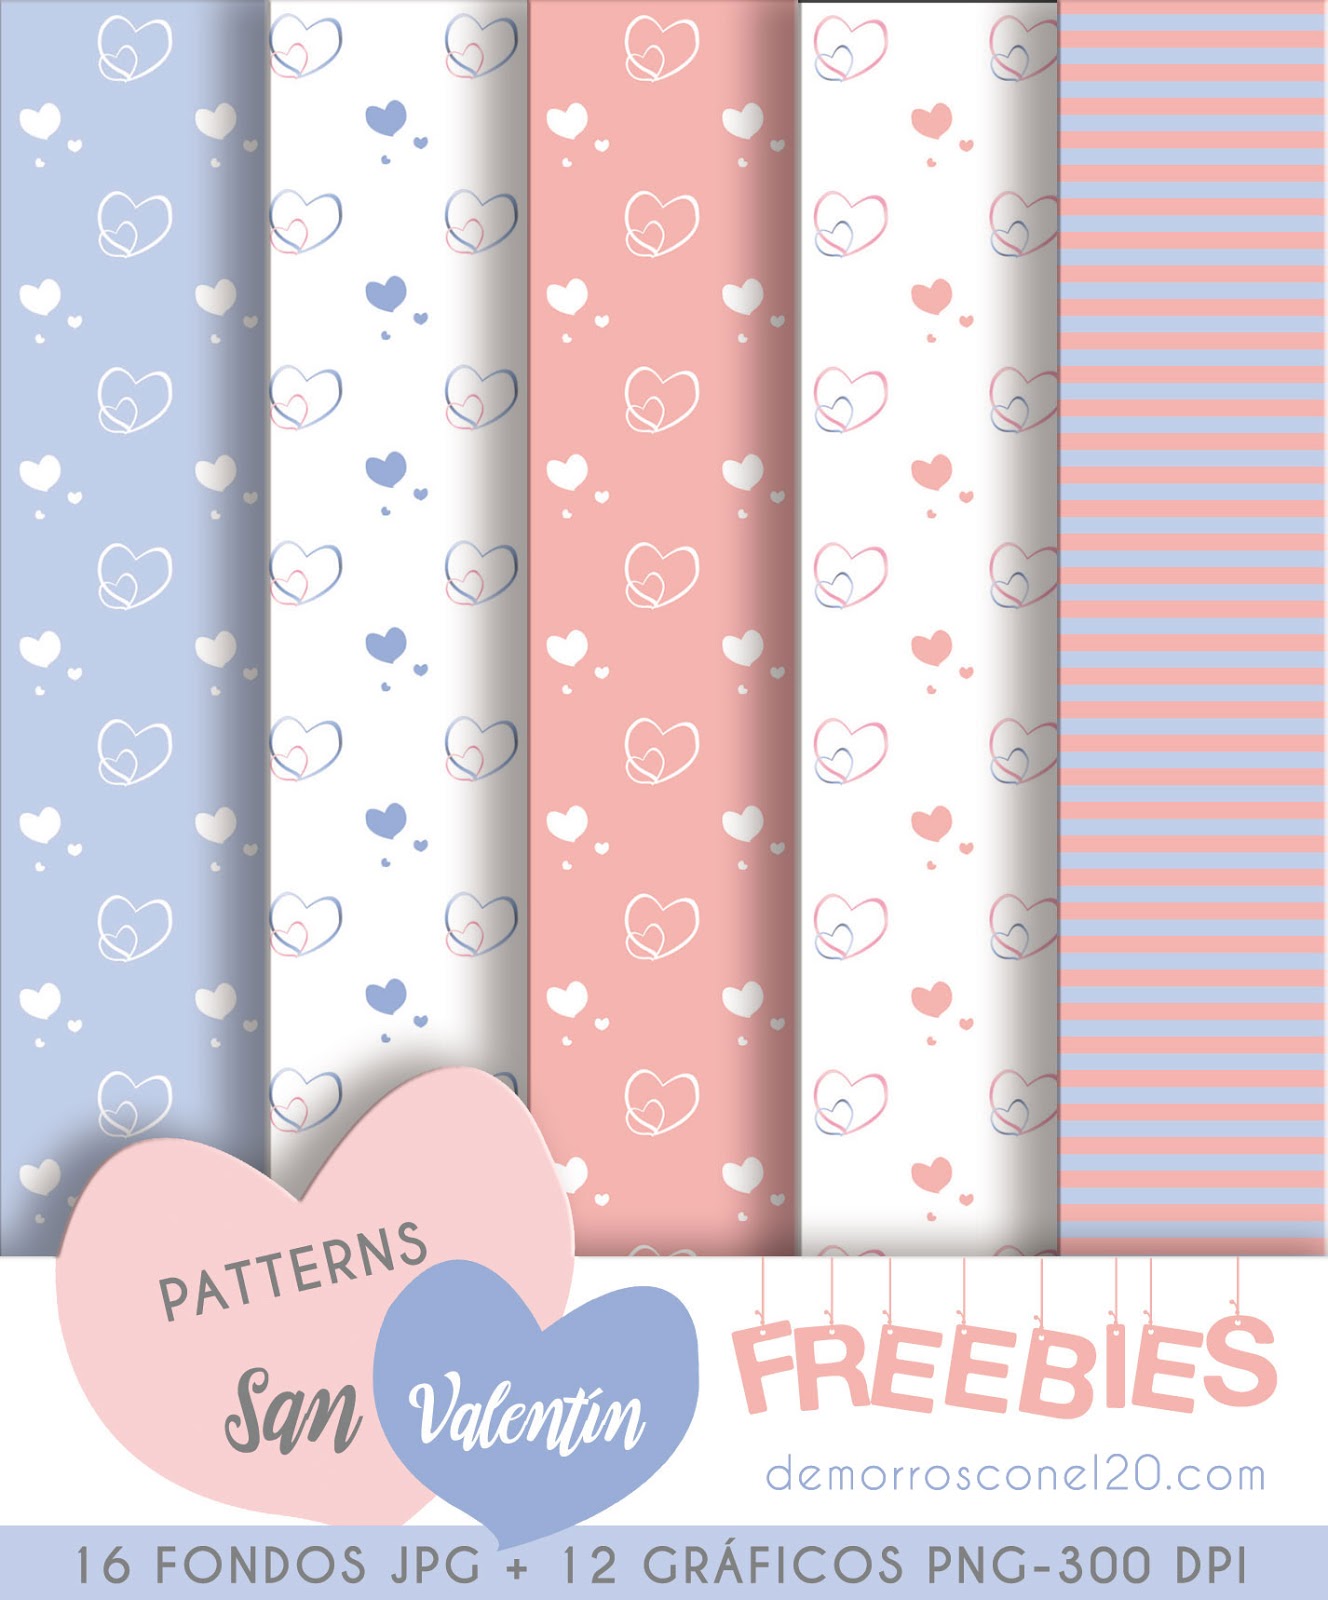 freebies-para-san-valentin